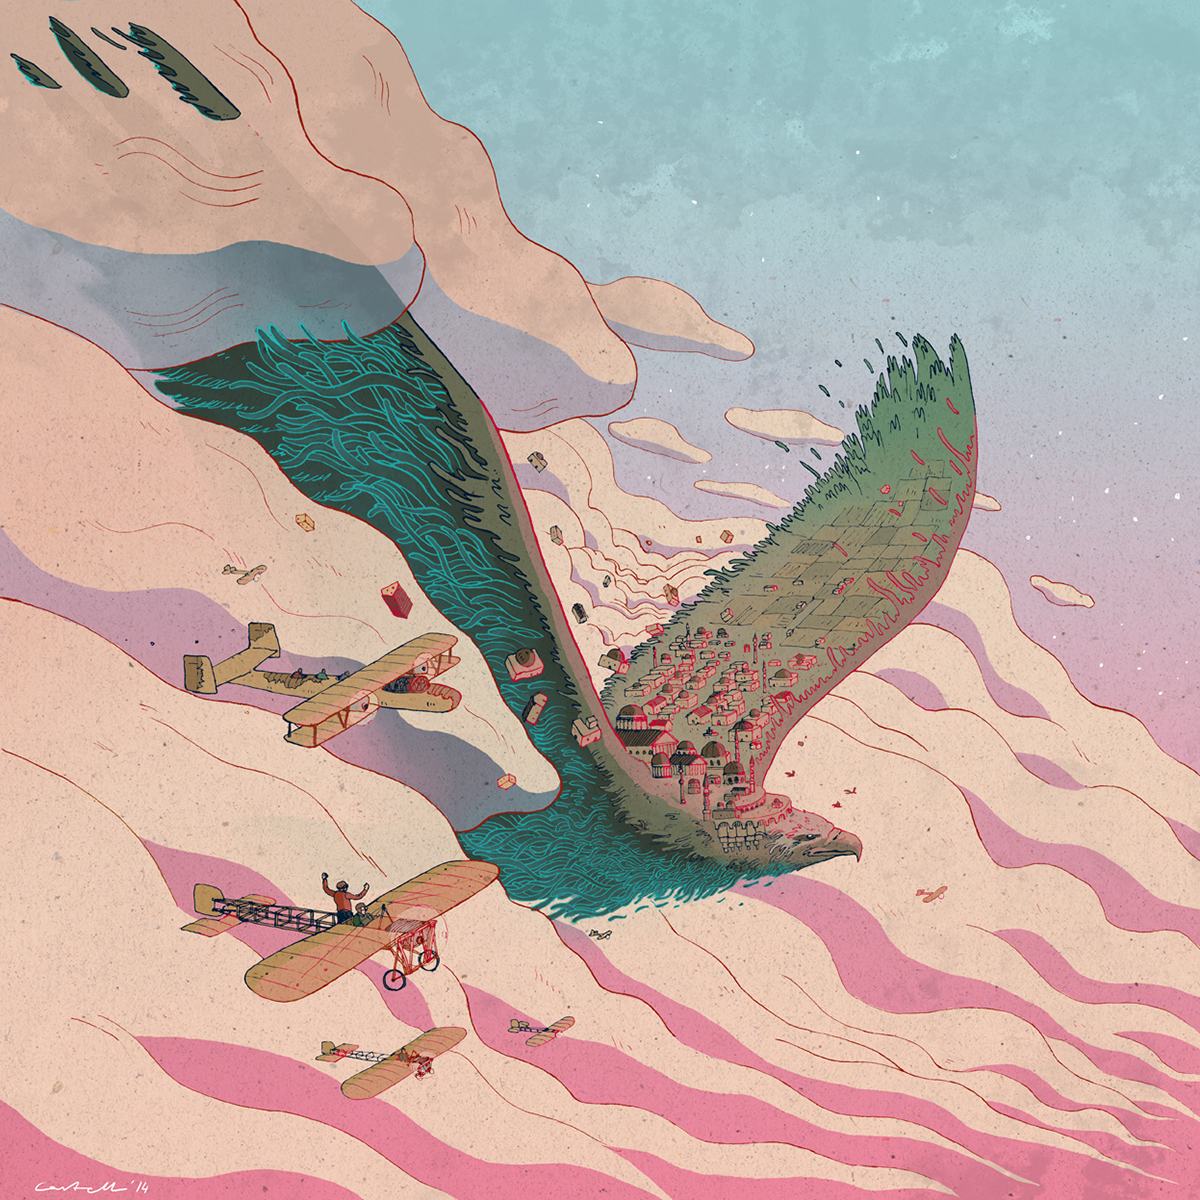 Illustrator dossier creative surrealism imagination psychedelic gioconda augustus eagle Civilization fantasy digital ink